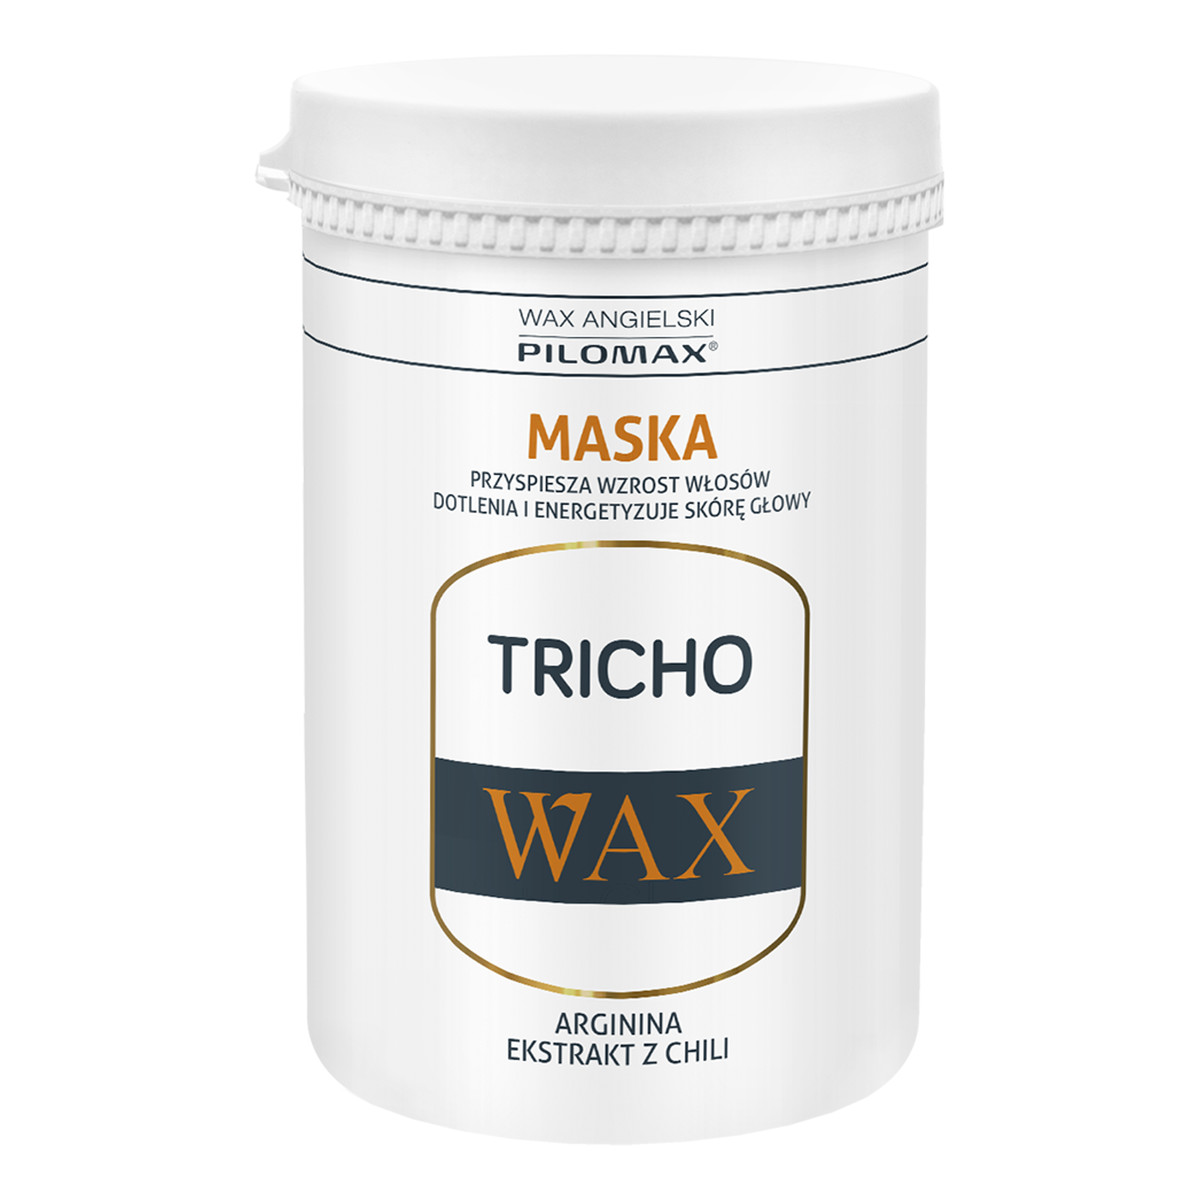 Pilomax Wax Tricho Maska przyspieszająca wzrost włosów 480ml